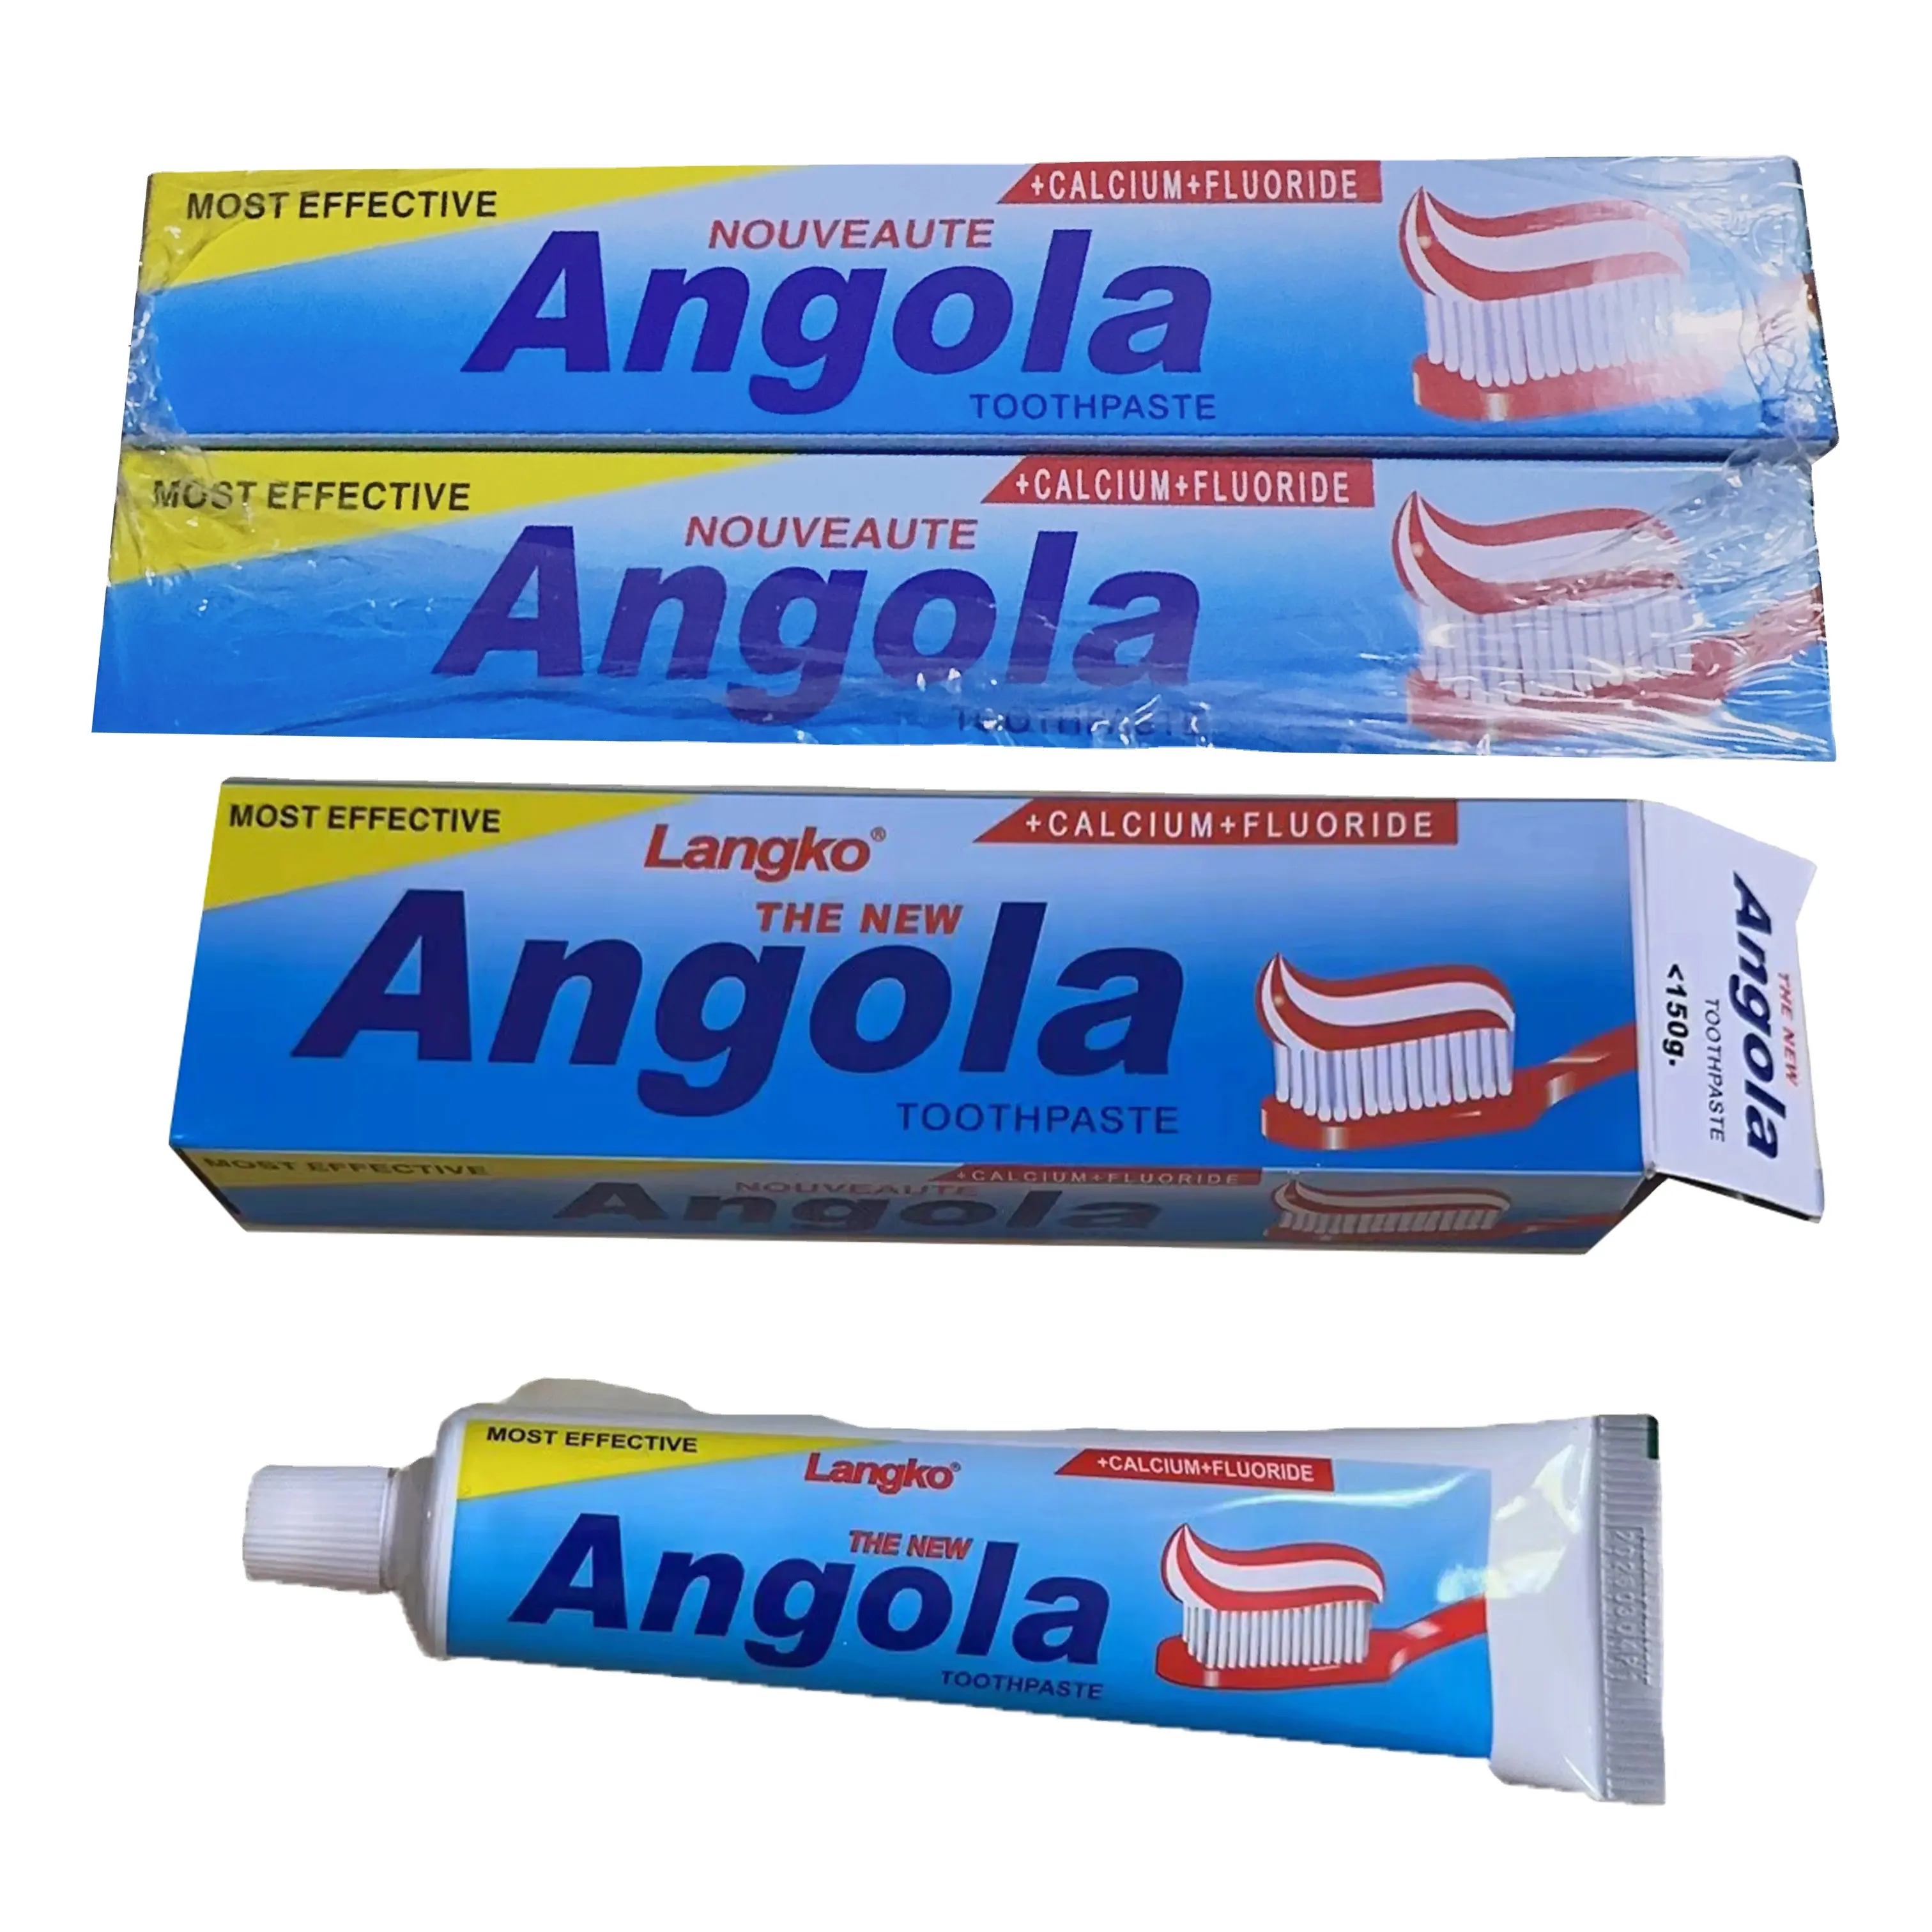 All'ingrosso private label Angora dentifricio 150g può efficacemente prevenire la carie e rendere i denti più bianchi